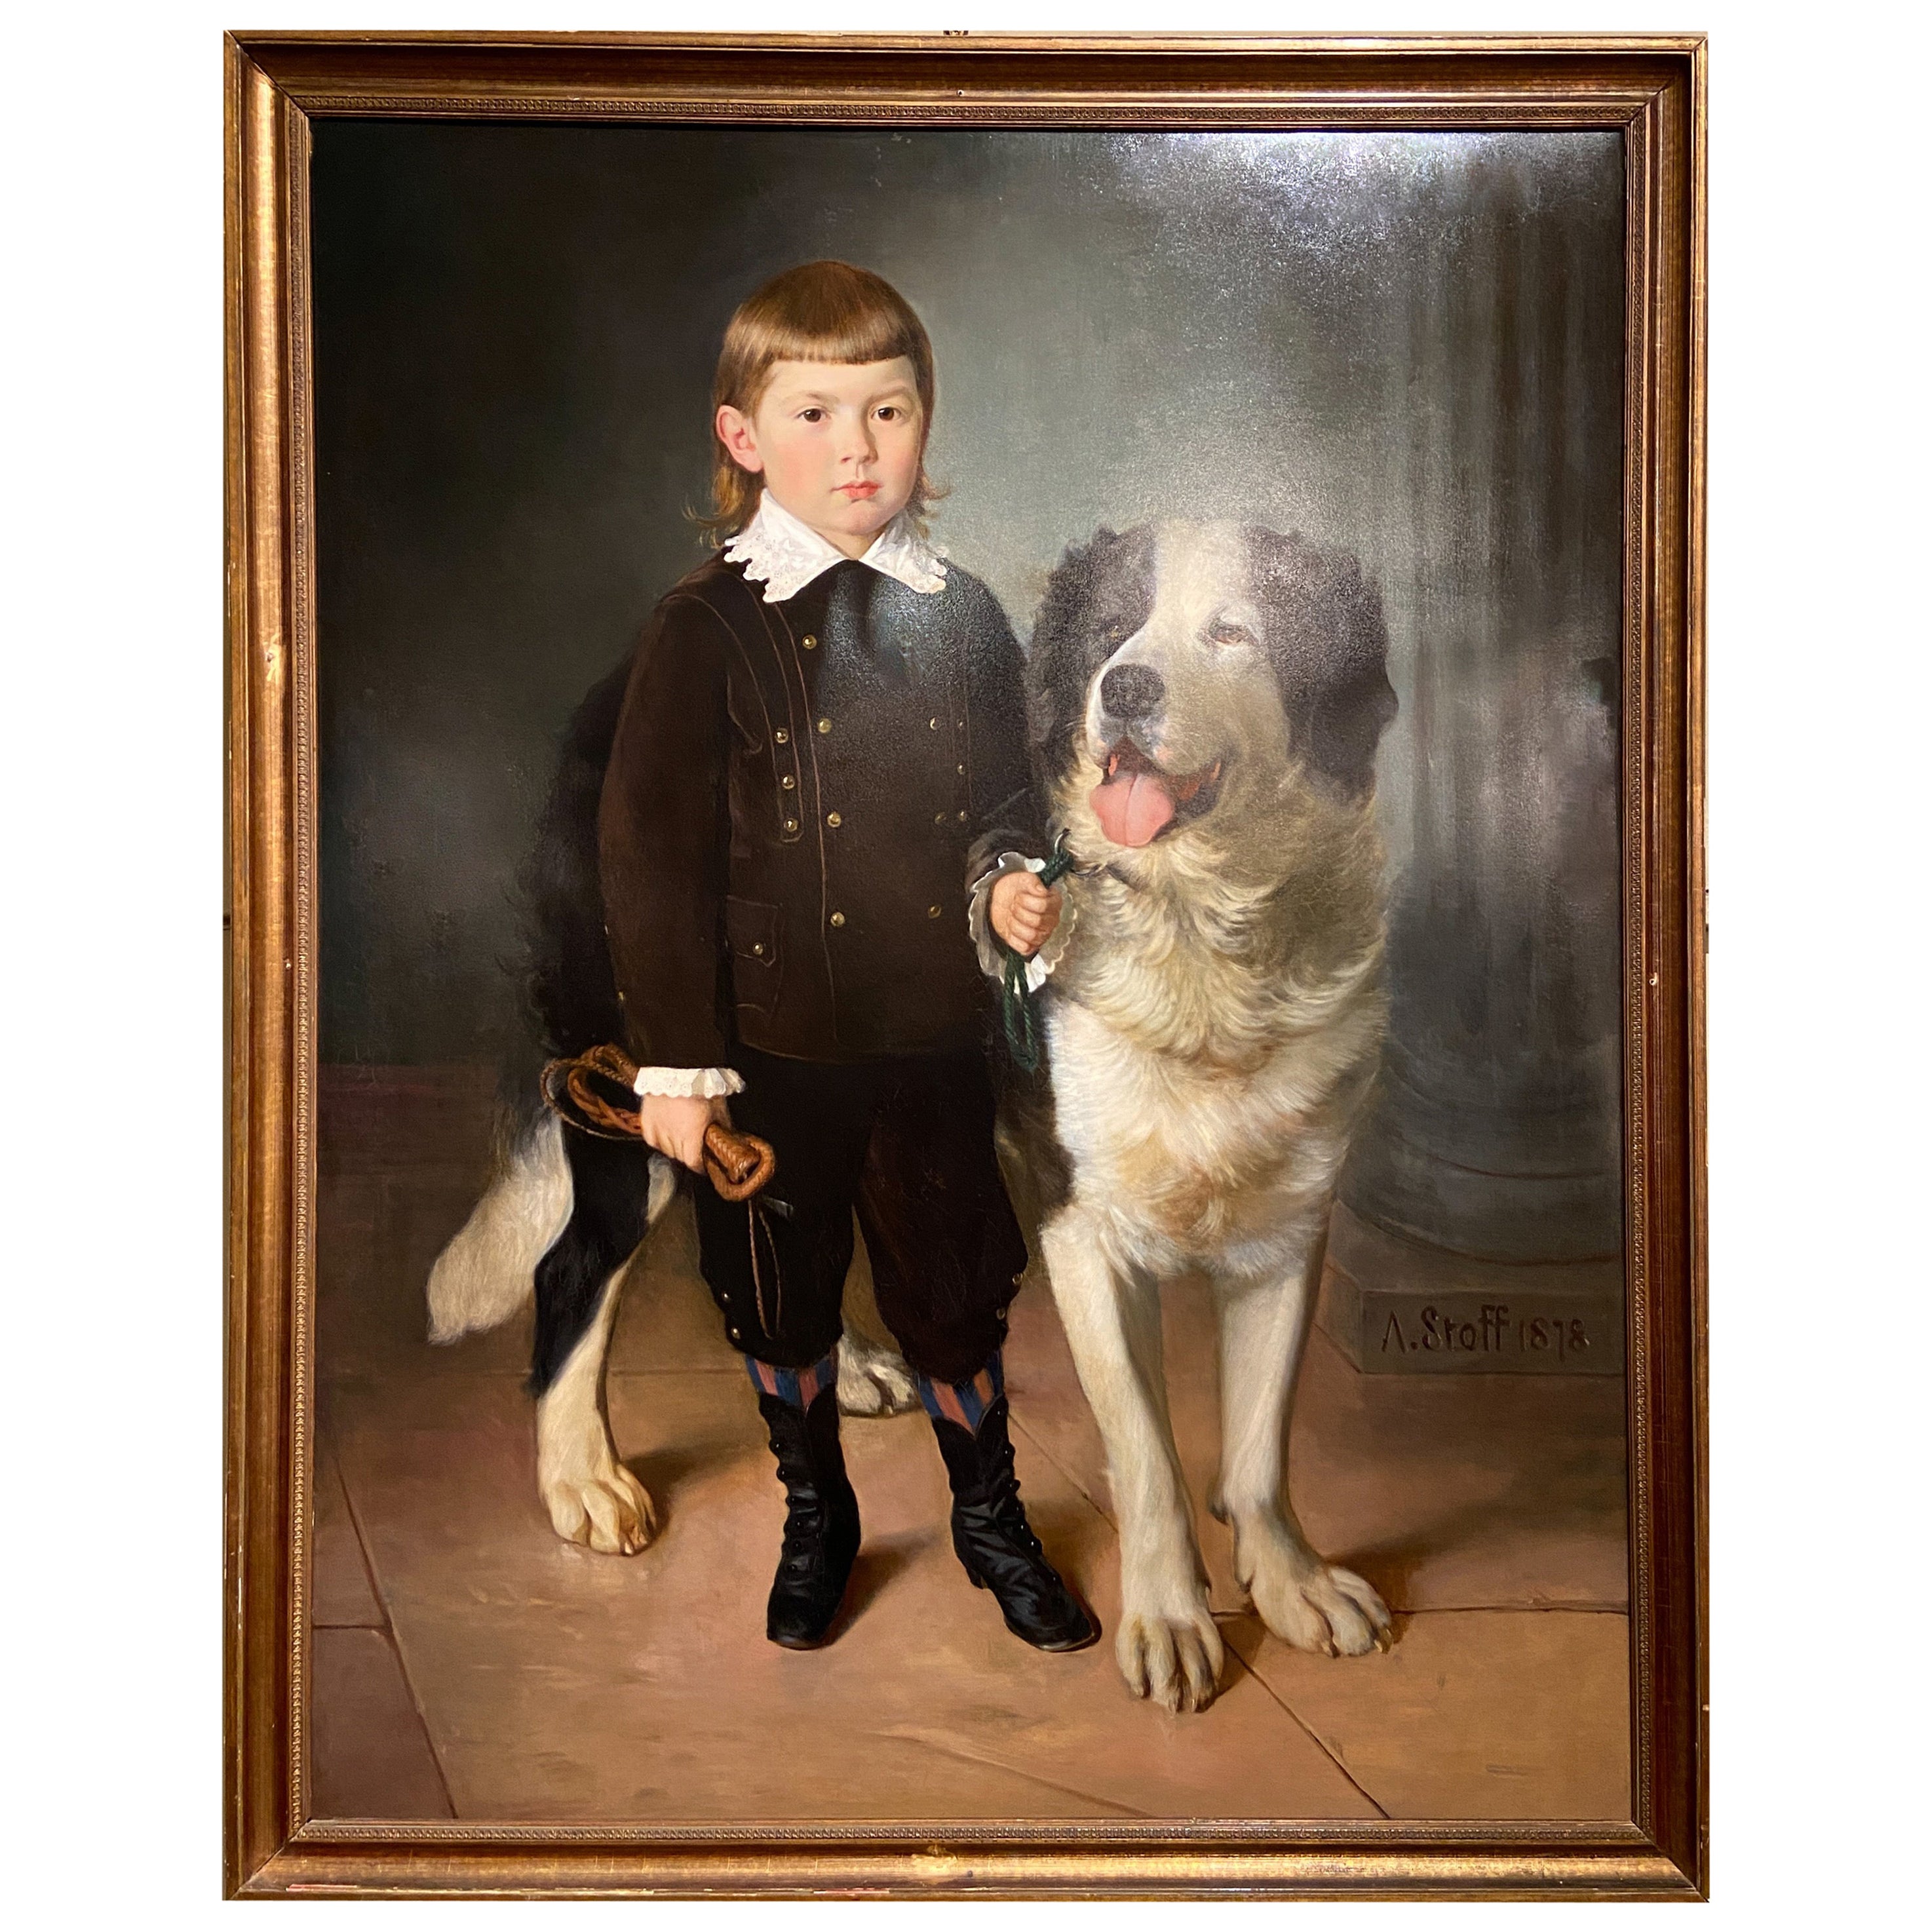 Portrait autrichien ancien à l'huile d'un garçon et d'un chien signé « A. Stoff 1878 ».